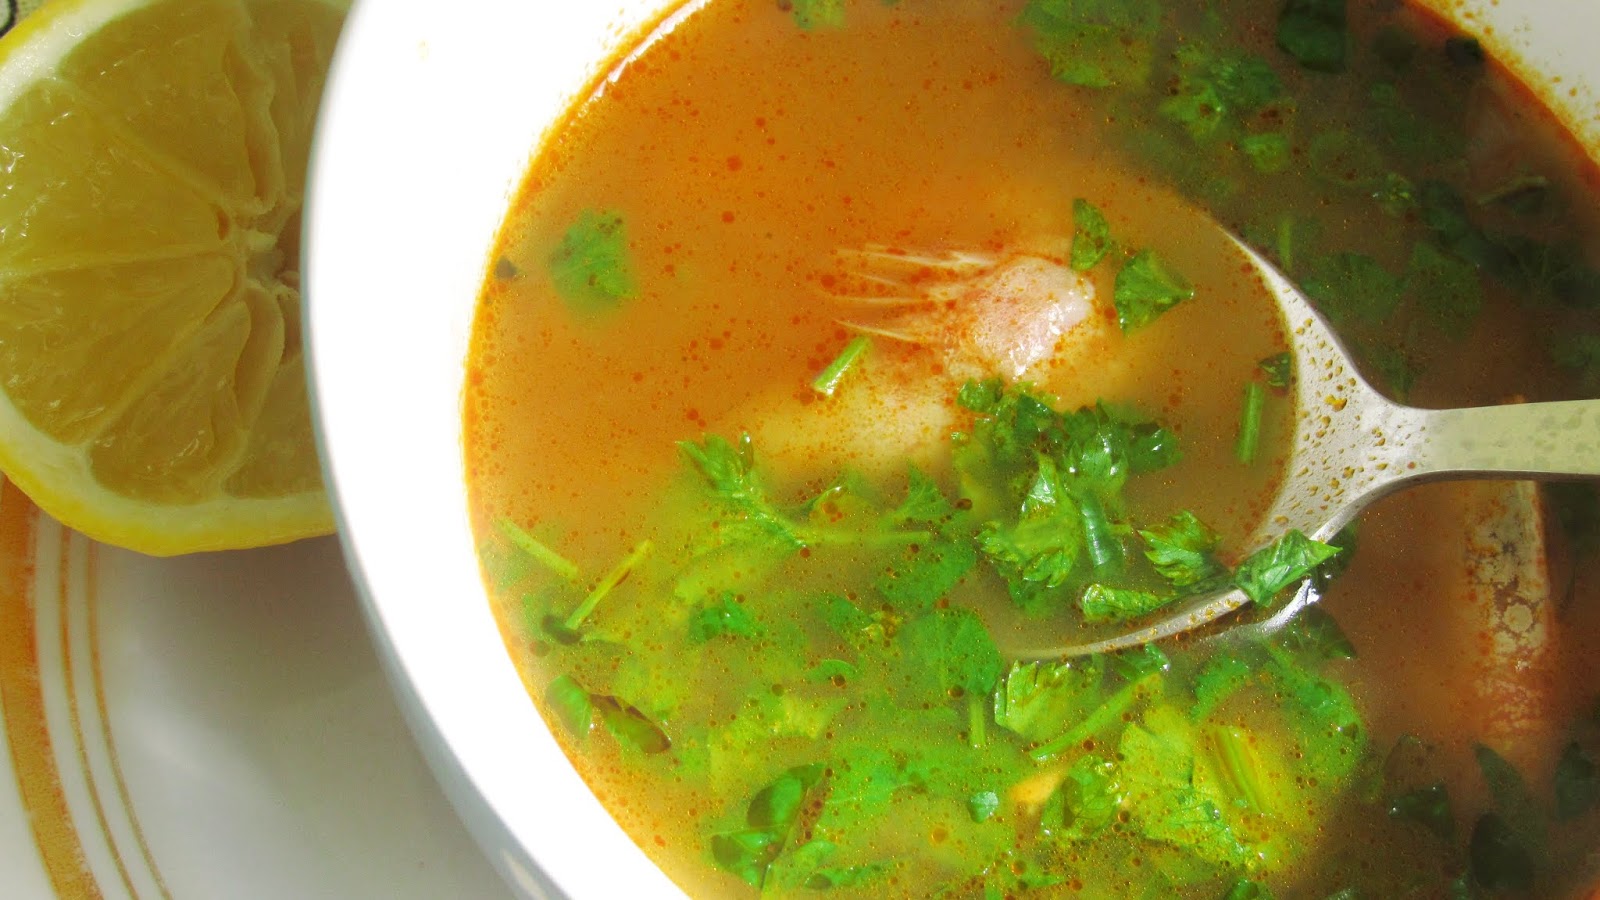 Soup go. Том ям. Супы жидкие в мексиканской кухне. Суп для собаки рецепт. Суп Томьян острый или нет.